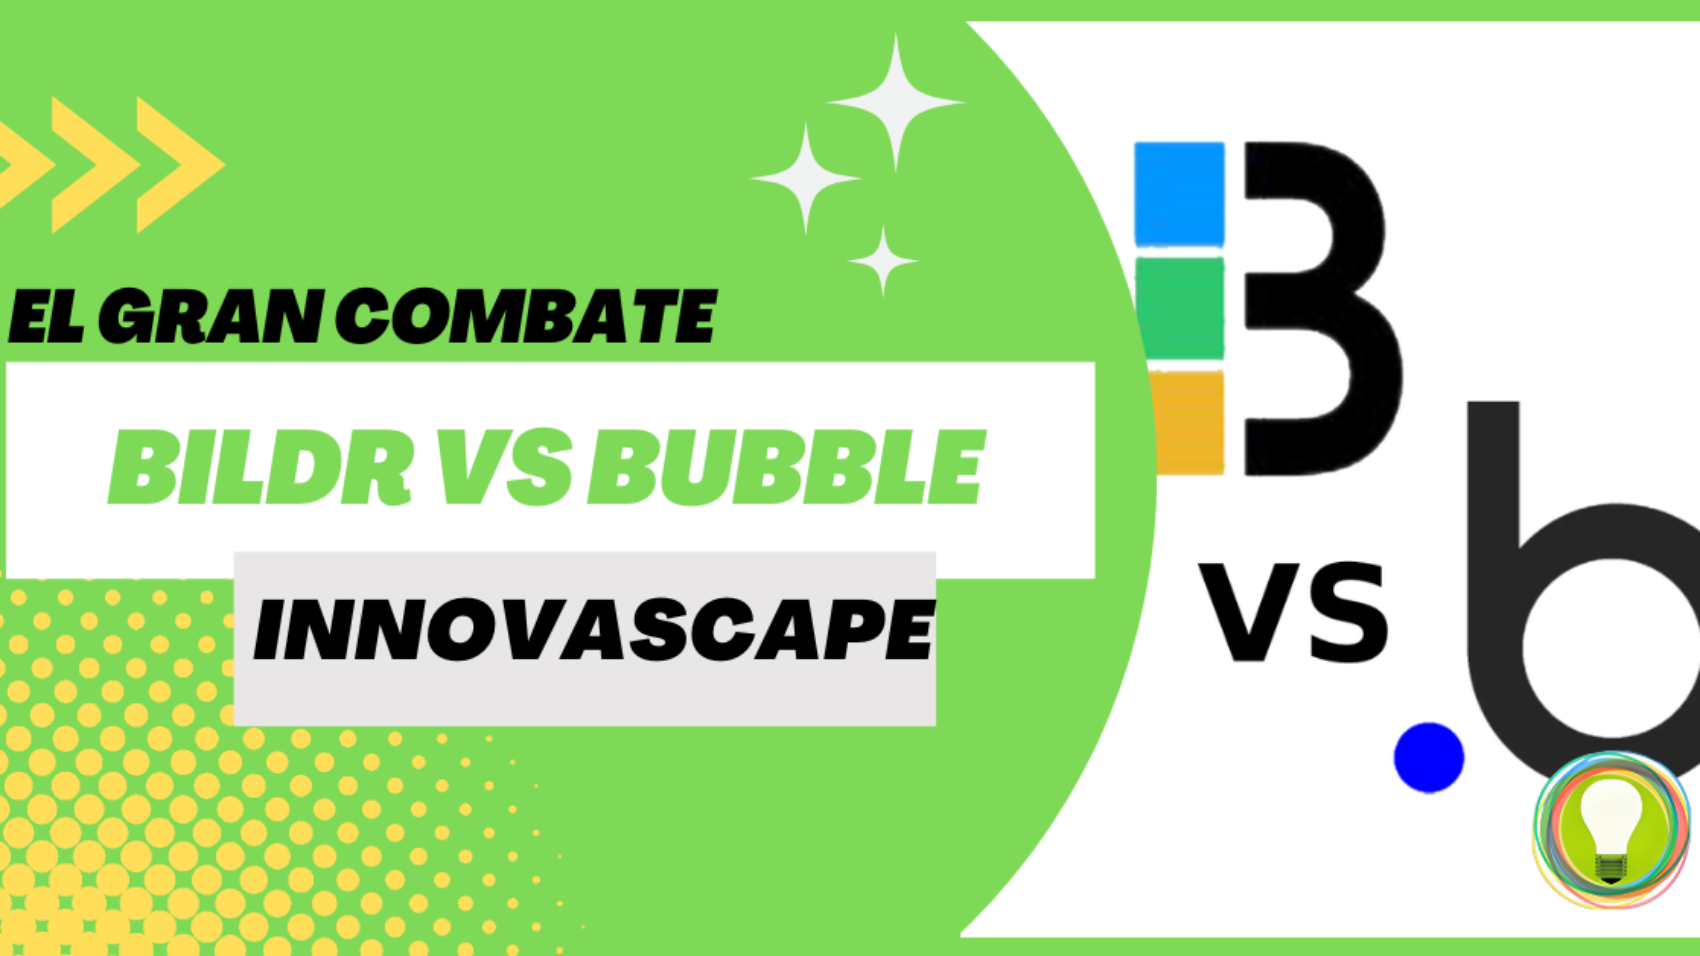 Bildr vs Bubble, aplicaciones nocode